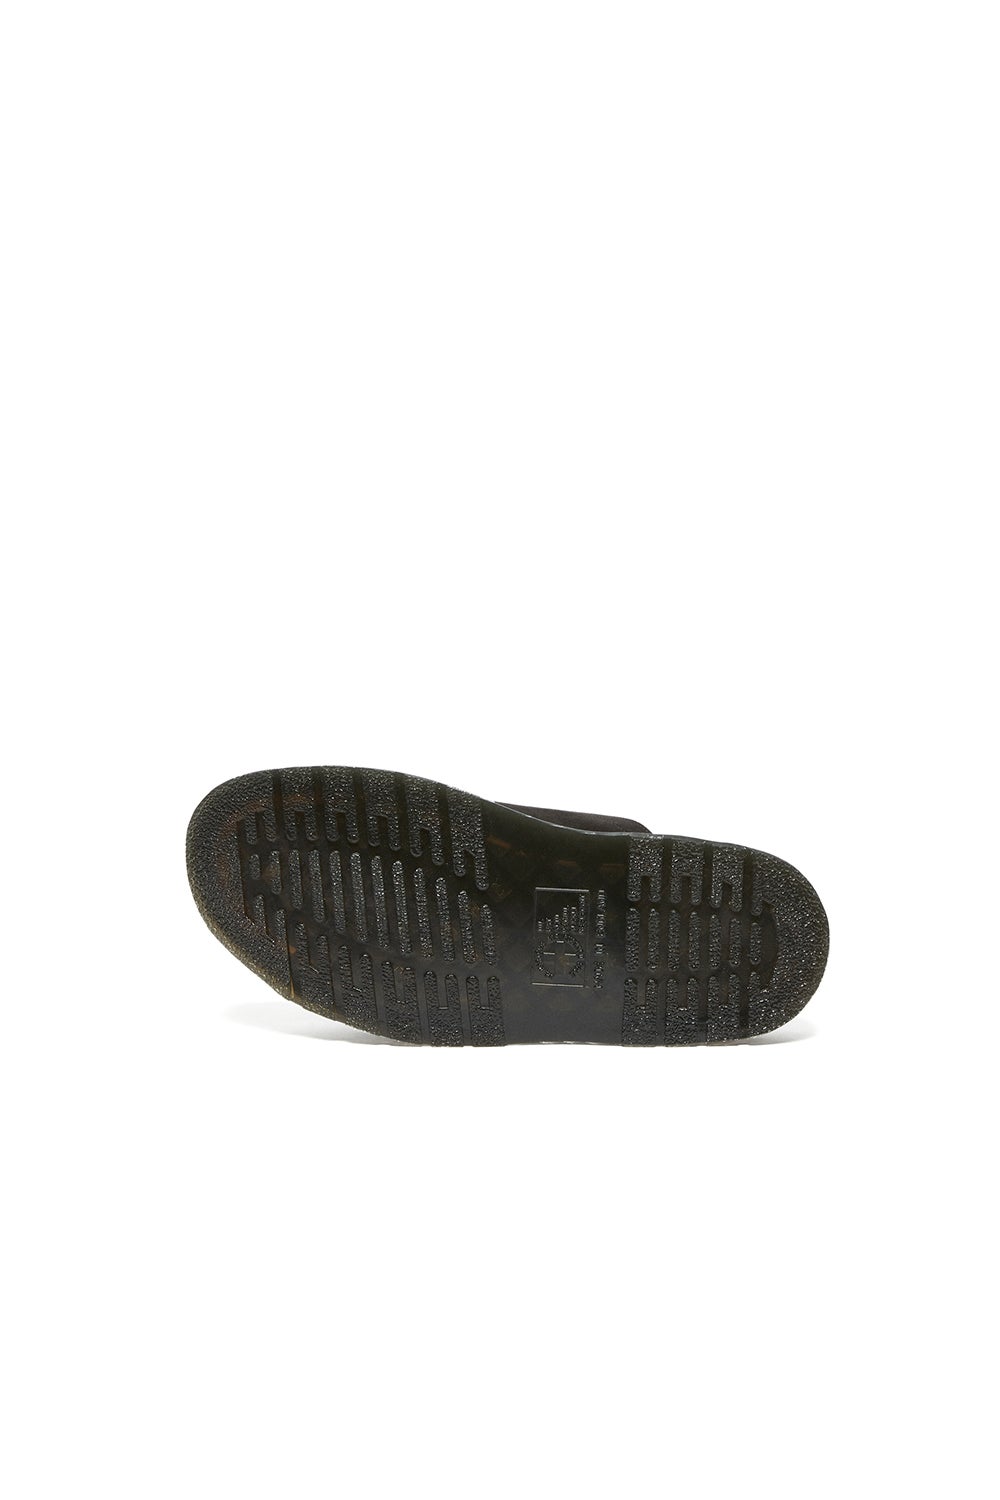 Dr. Martens Dyne Made in England Slide Sandals Black